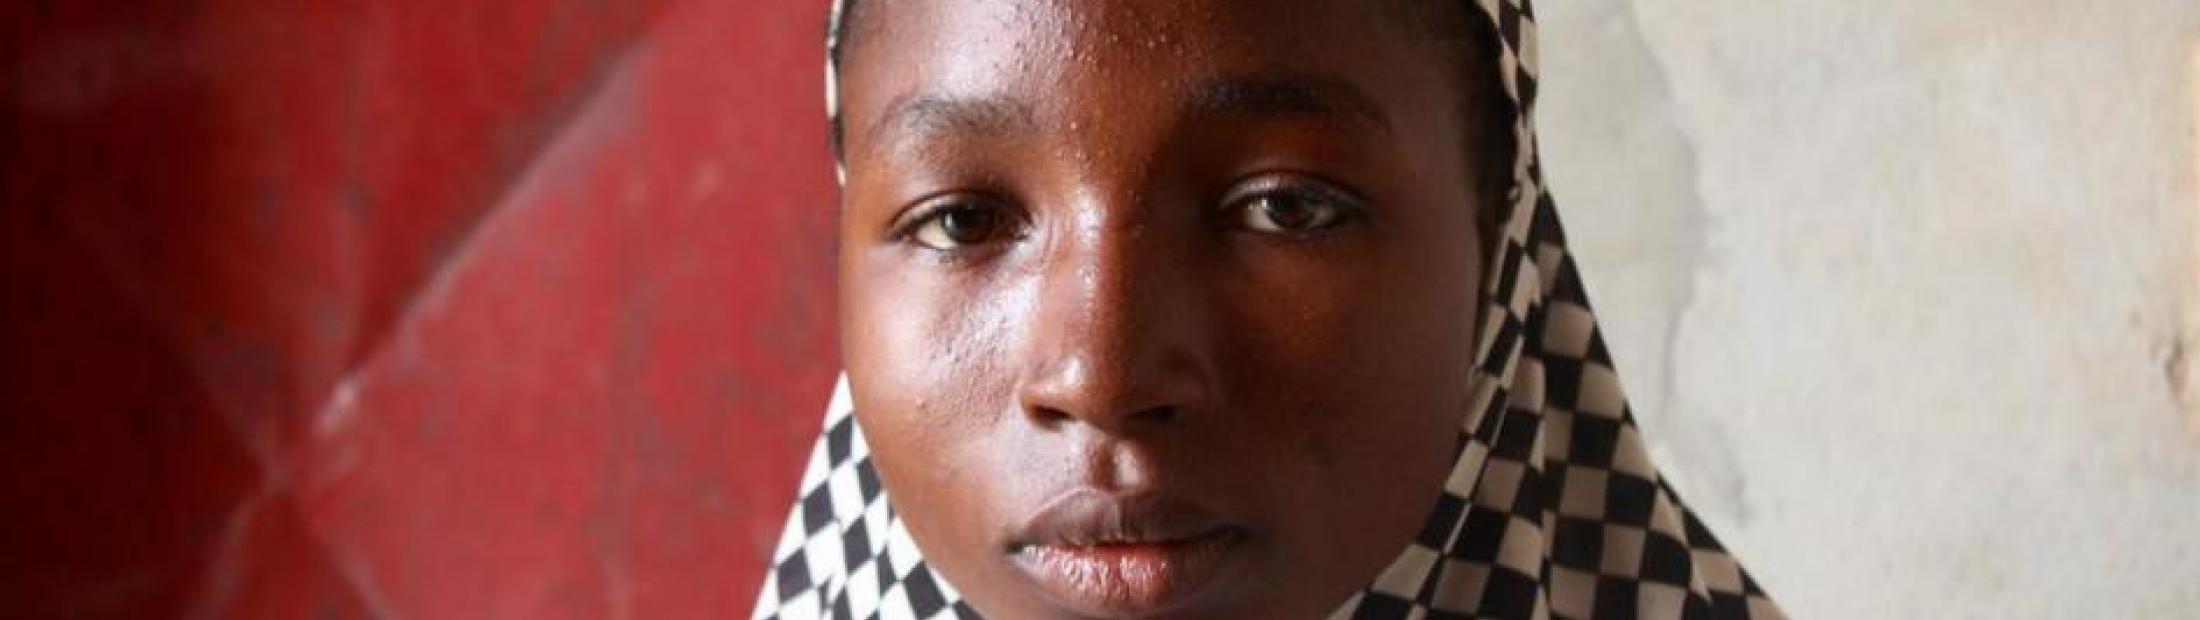 Mutilación genital femenina: ¿qué es y qué incidencia tiene actualmente?